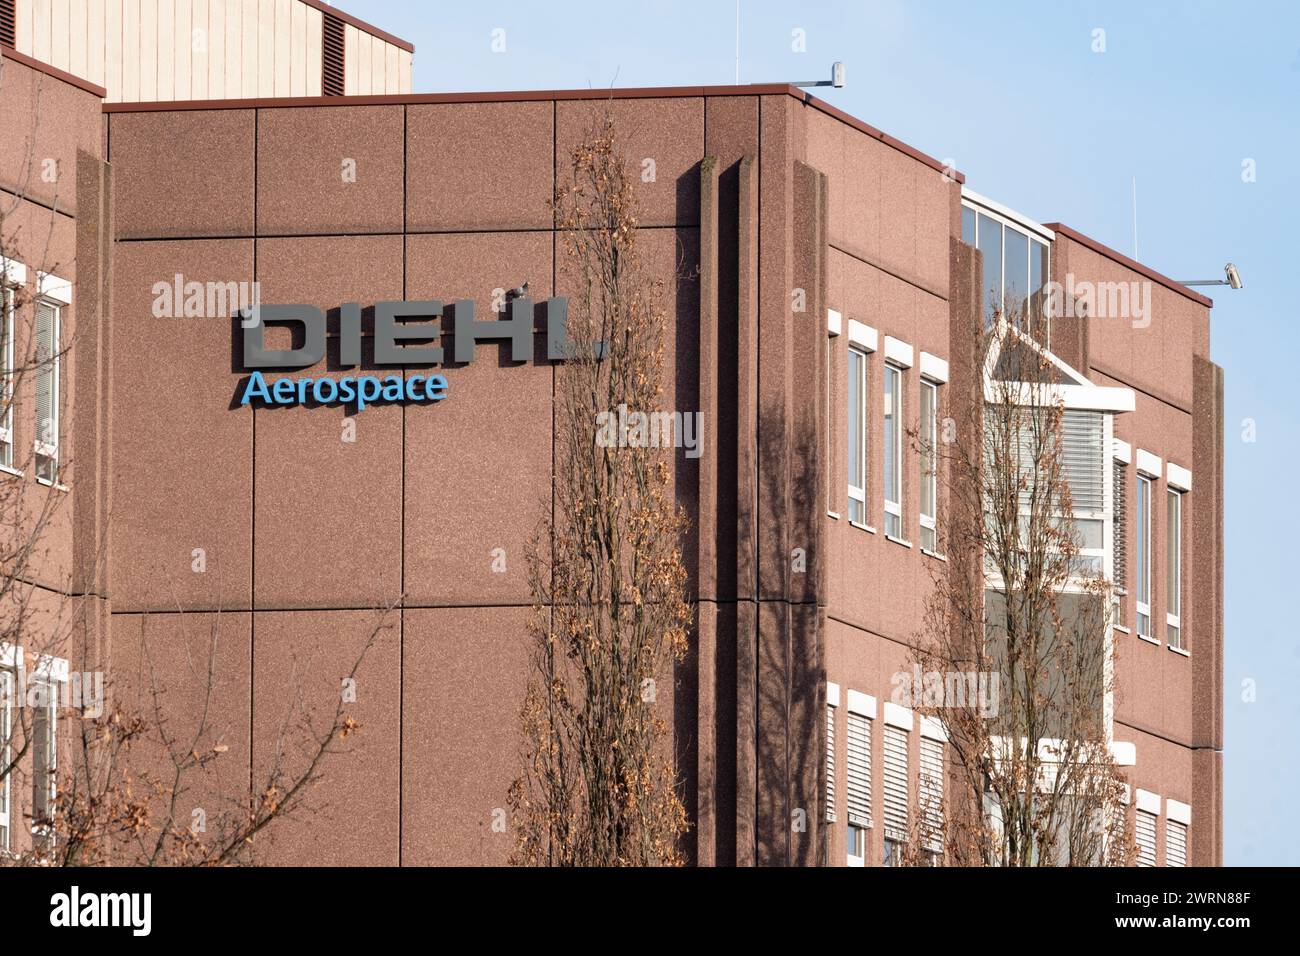 Diehl Aviation Building, Diehl Aerospace GmbH, fabricantes internacionales de aviones, pantallas para aviones Airbus, desarrollo sostenible en Technolo Foto de stock